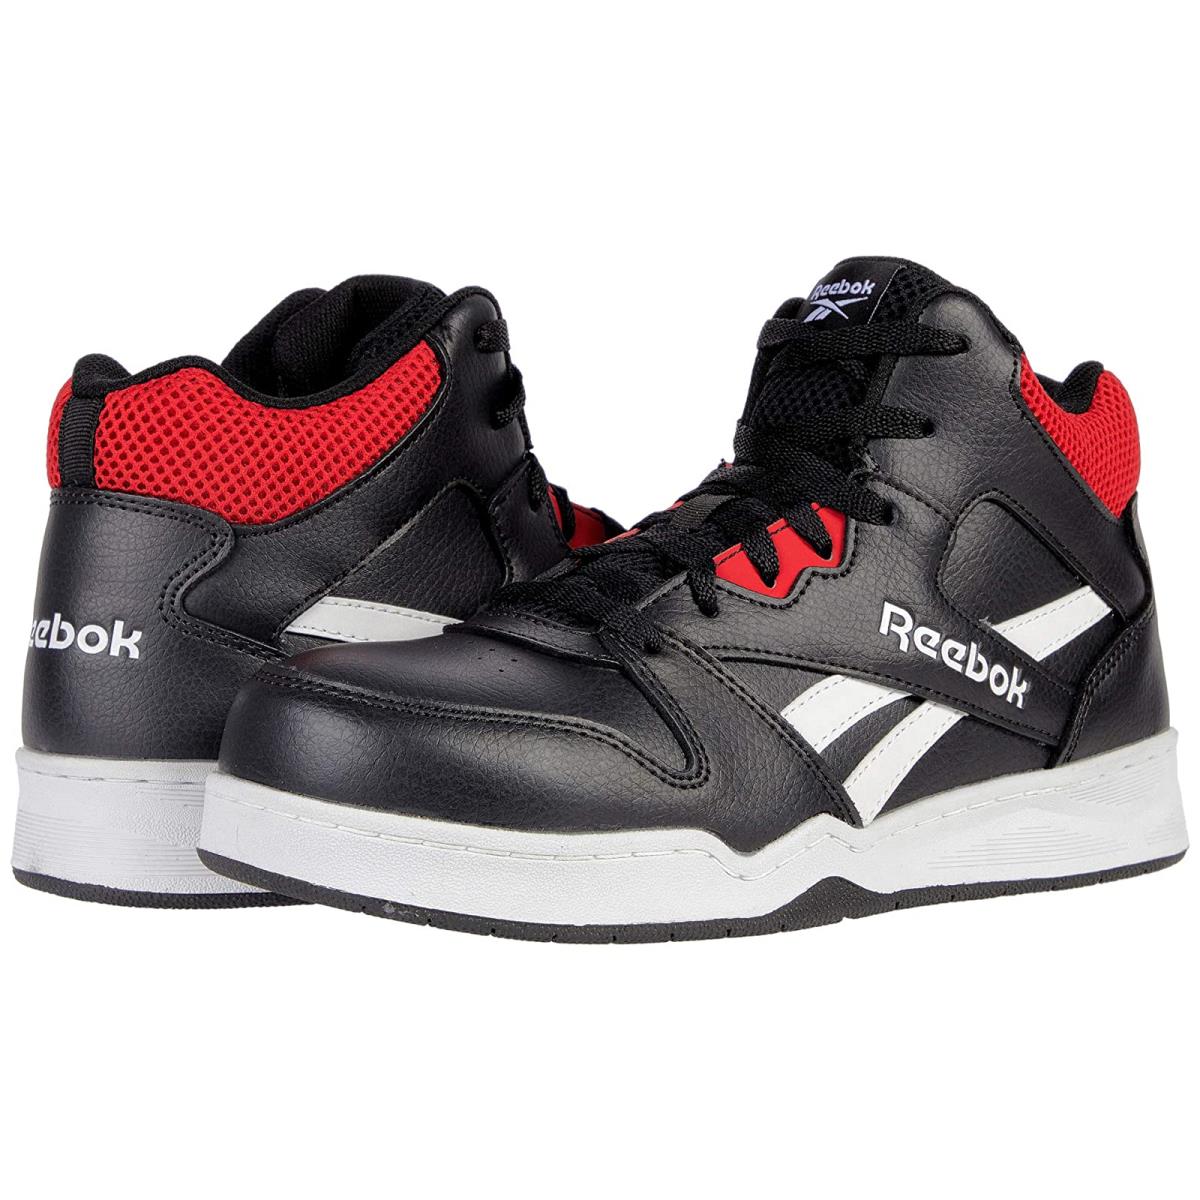 Man`s Sneakers Athletic Shoes Reebok Work BB4500 Work High Top Sneaker Black/Red